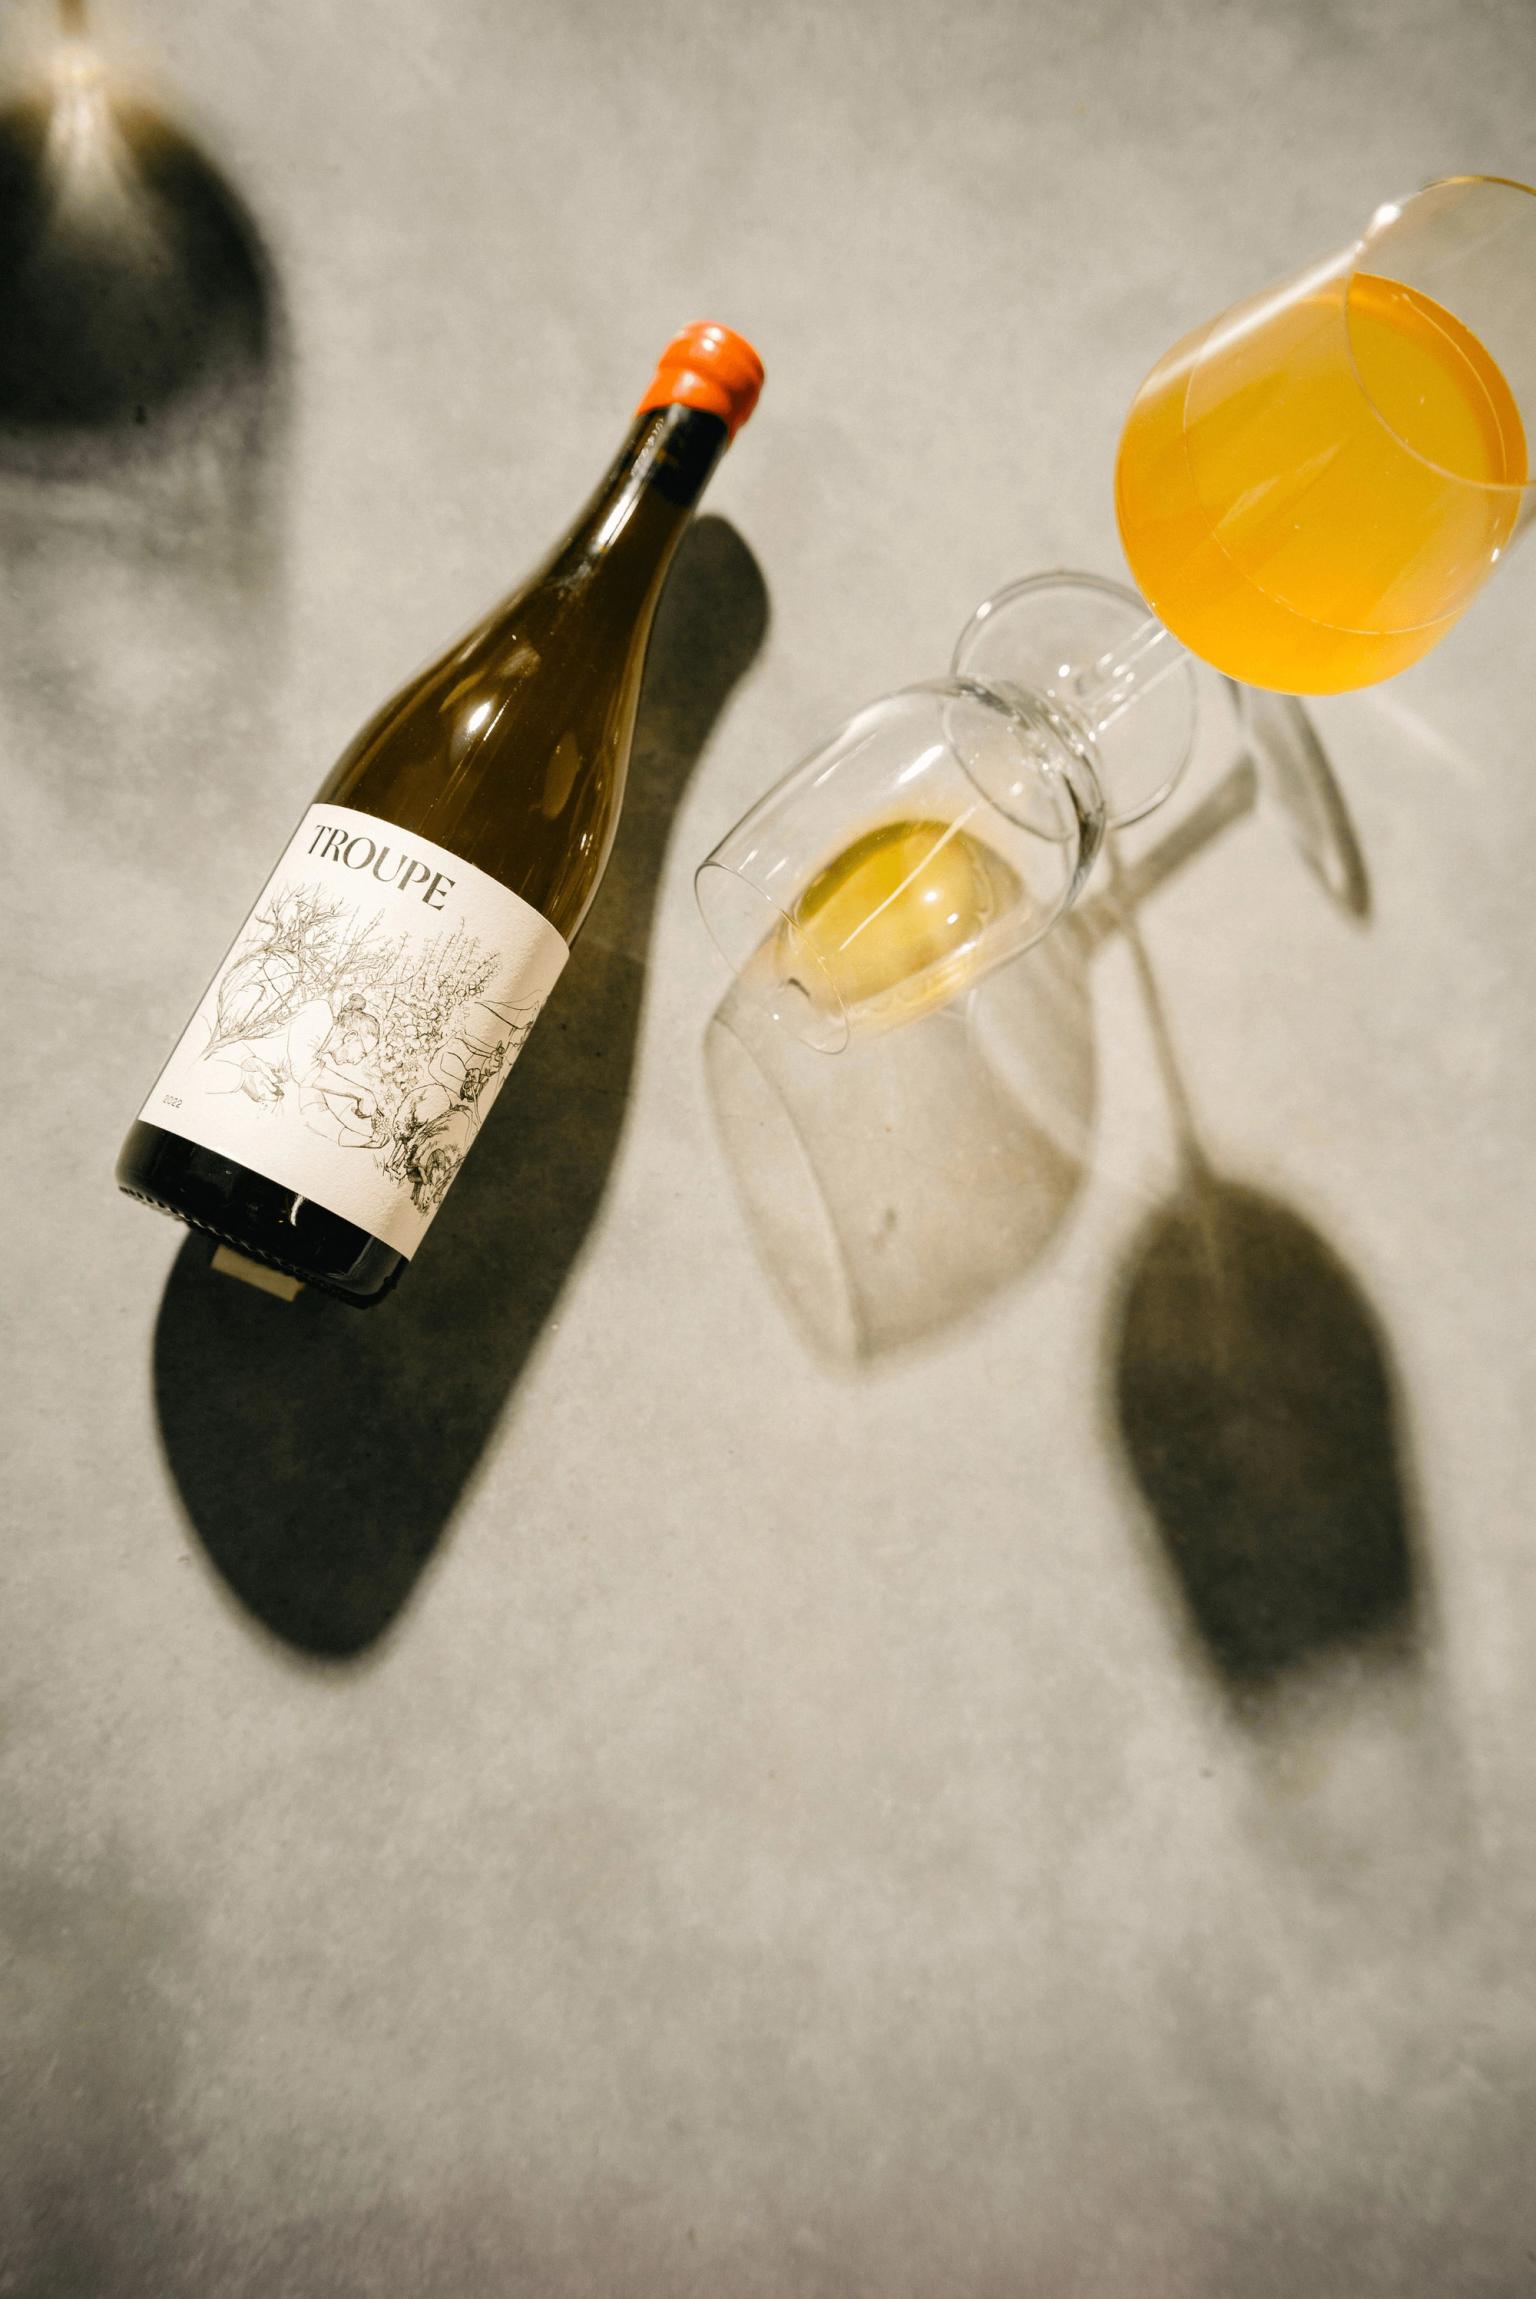 Orange Wine Product Photography